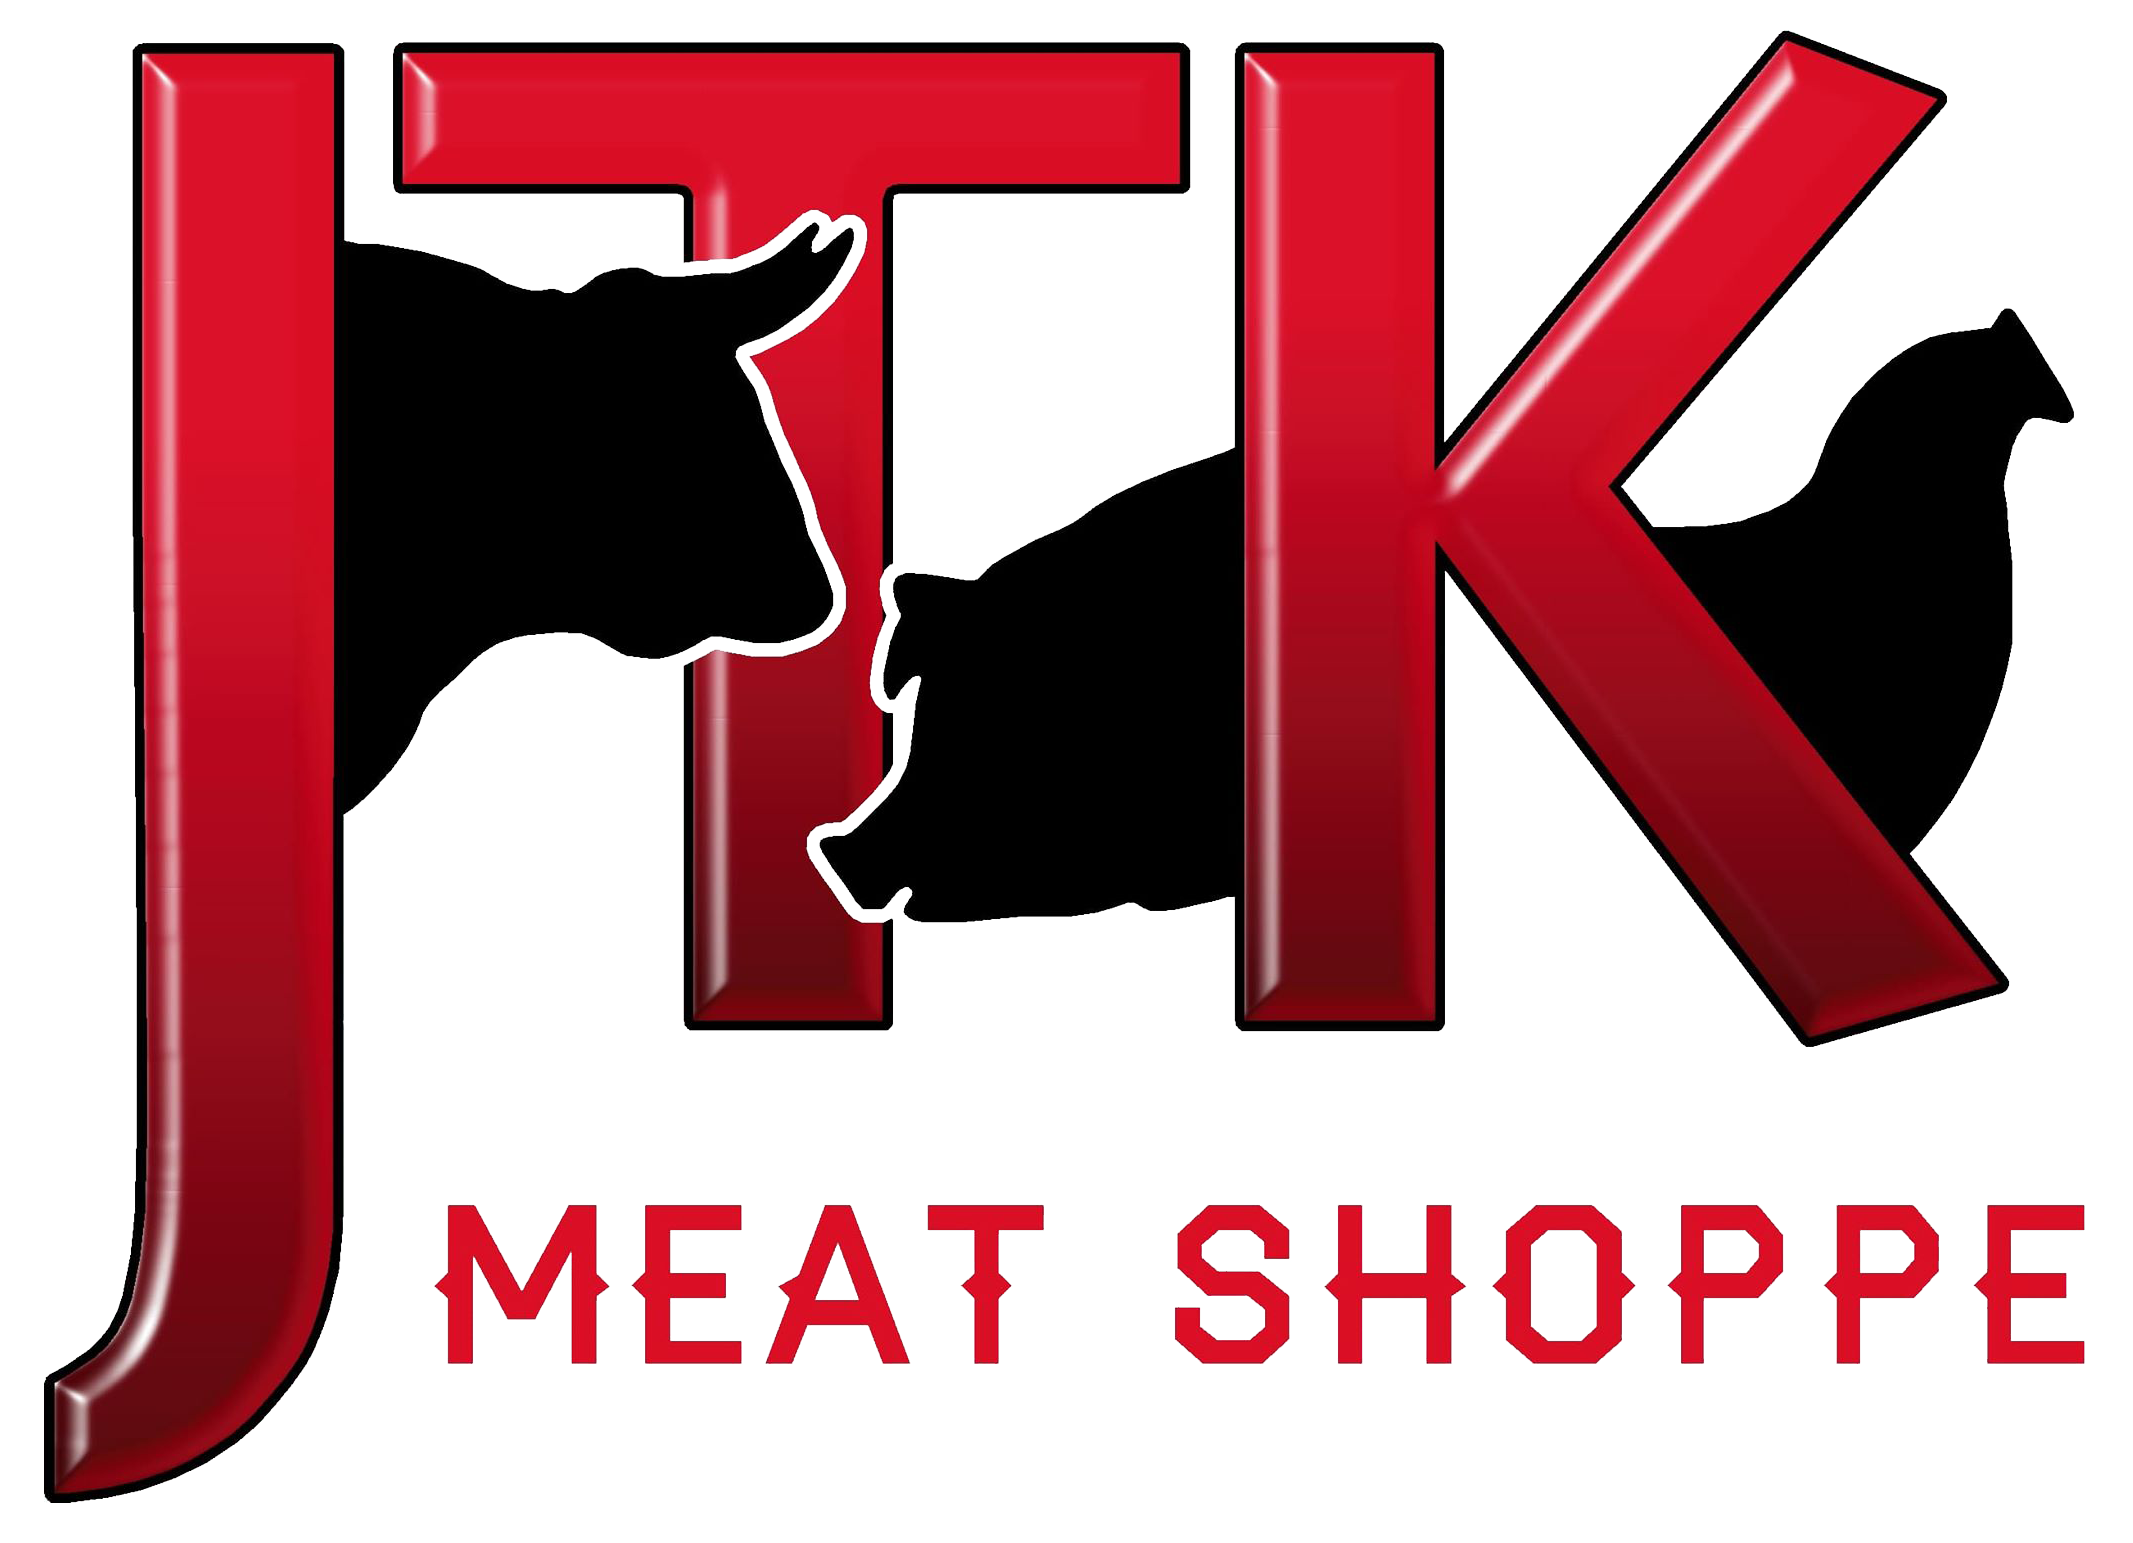 JTK Meat Shoppe